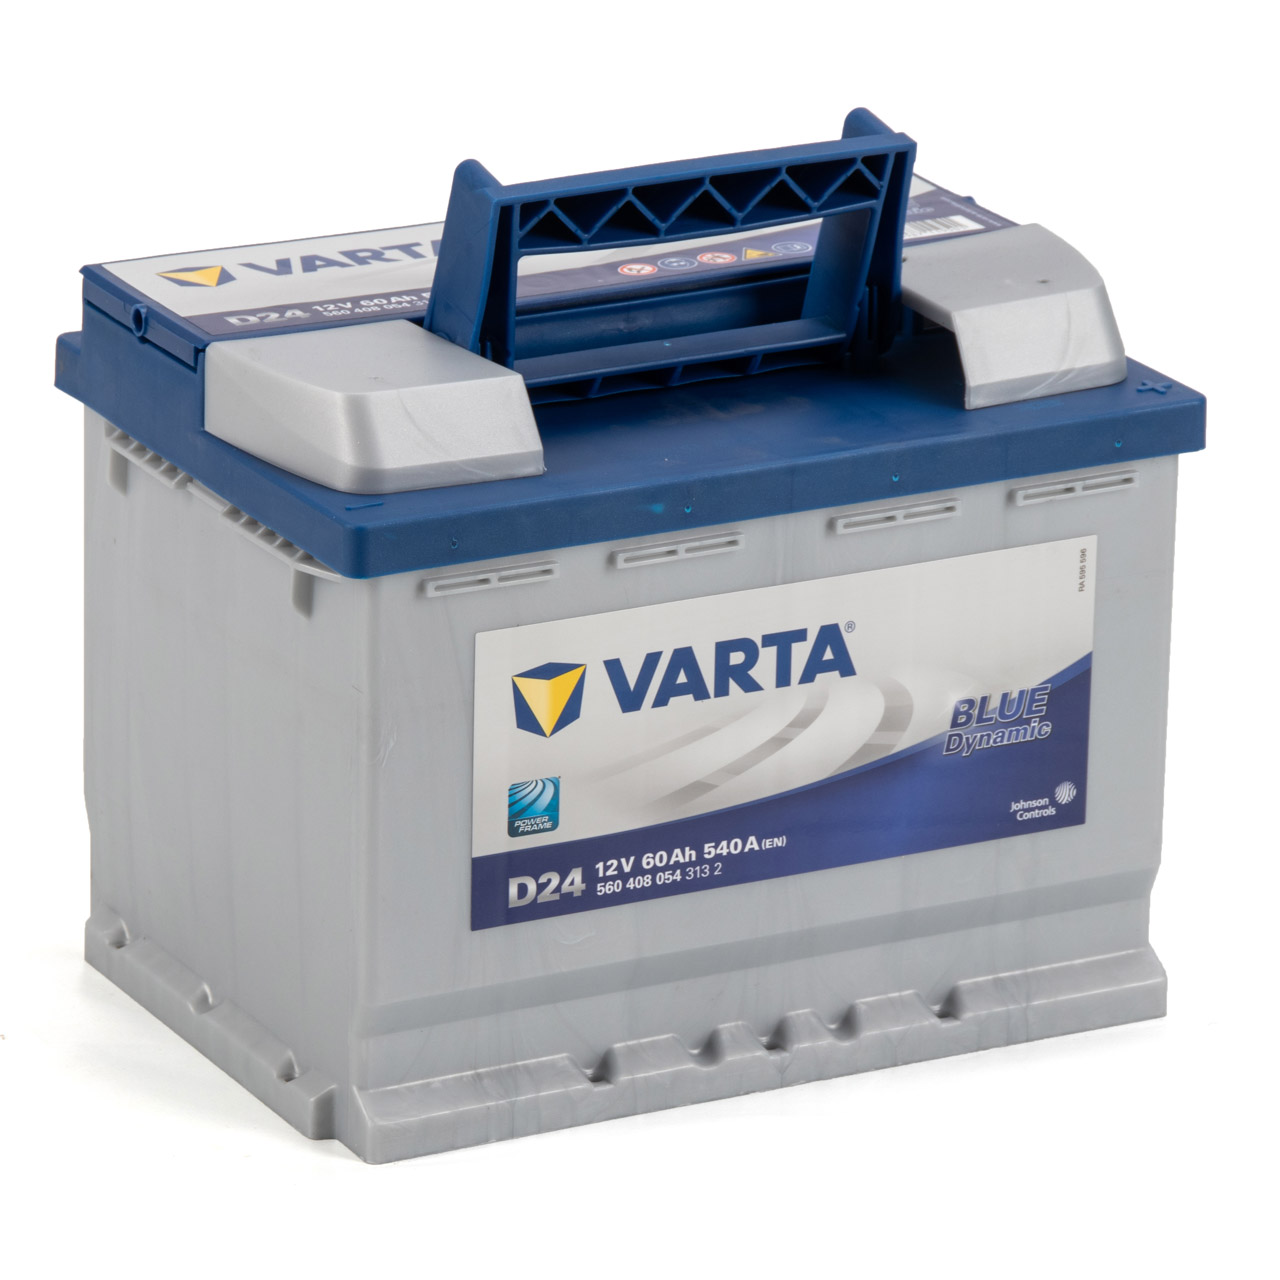 VARTA Starterbatterien / Autobatterien - 5604080543132 - ws